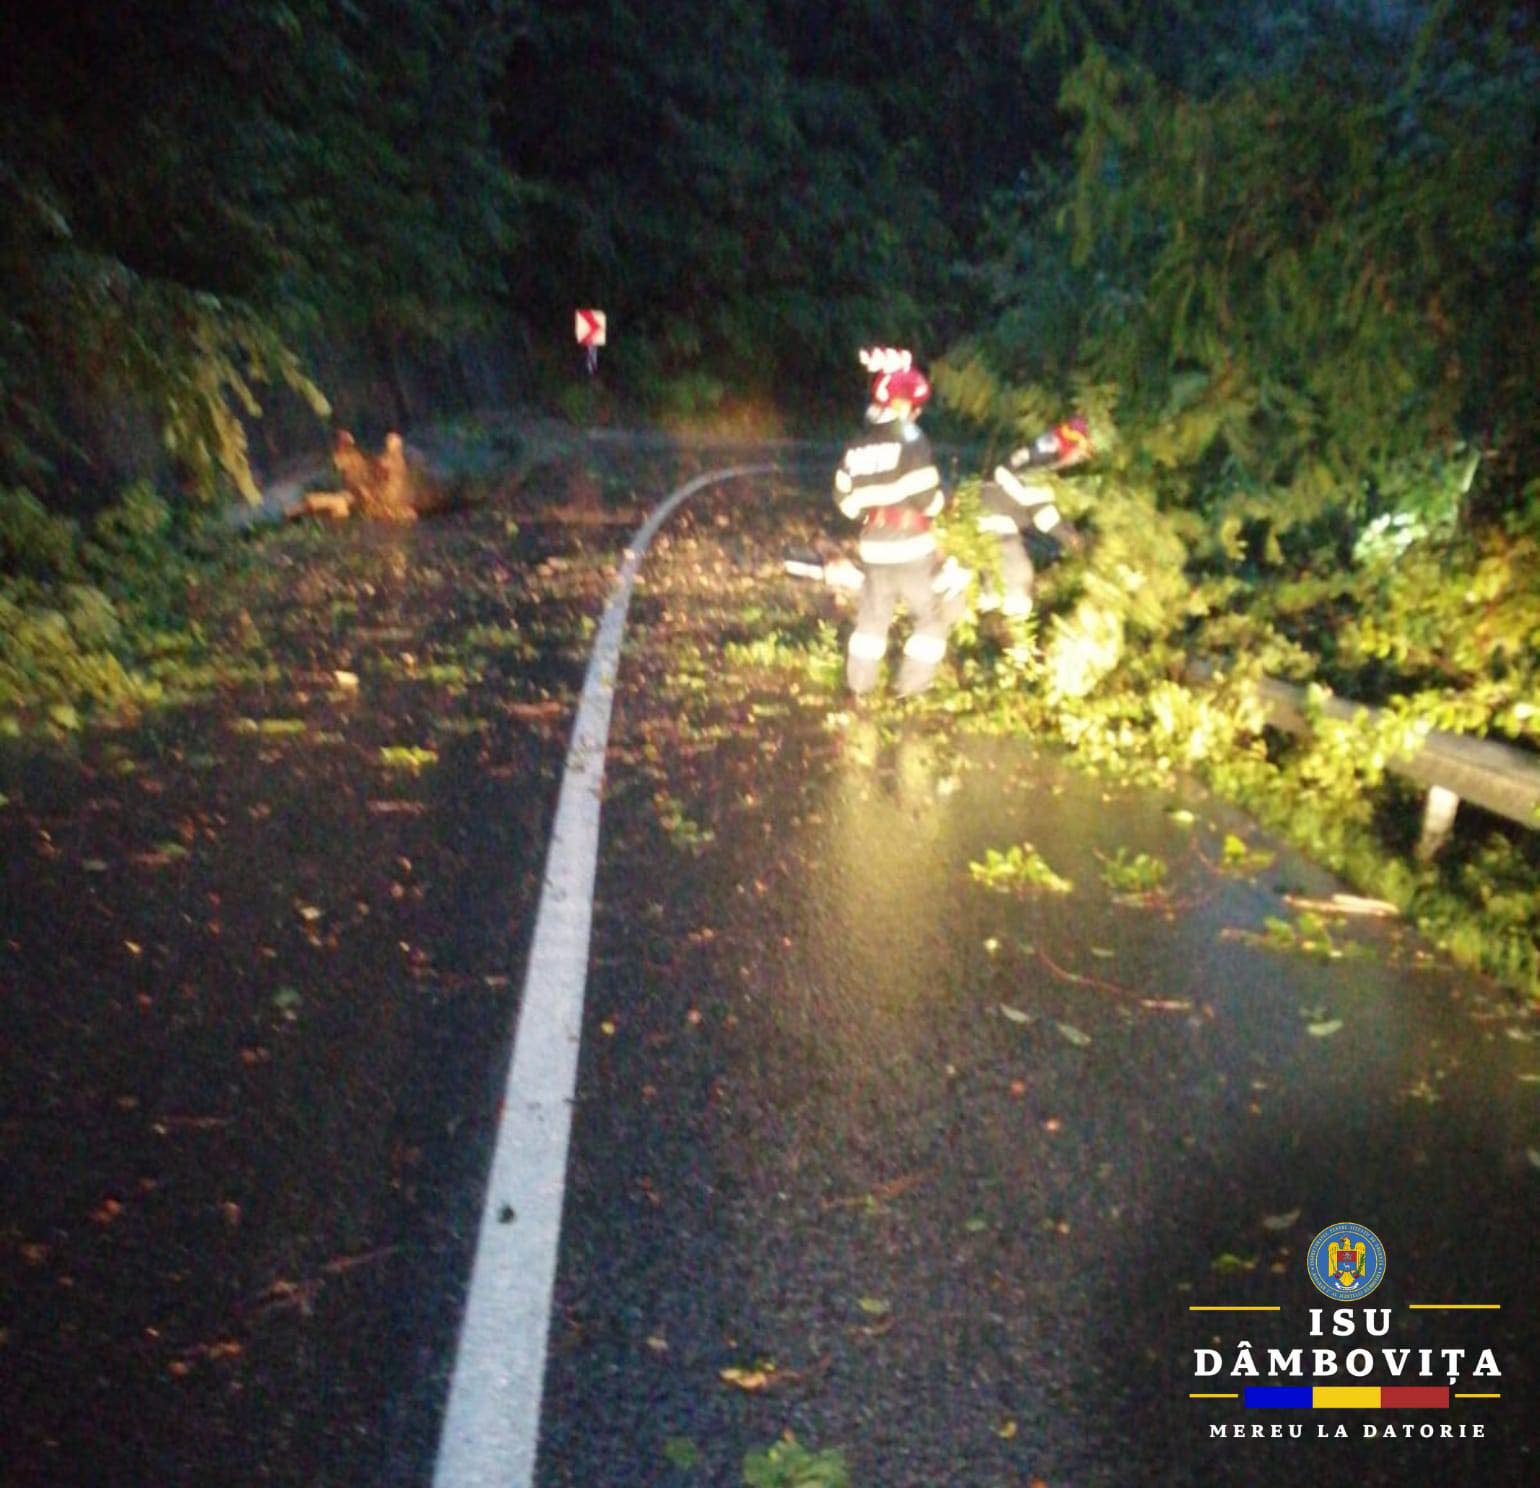 12 copaci au fost doborâți de vântul puternic, în ultimele ore, în județul Dâmbovița